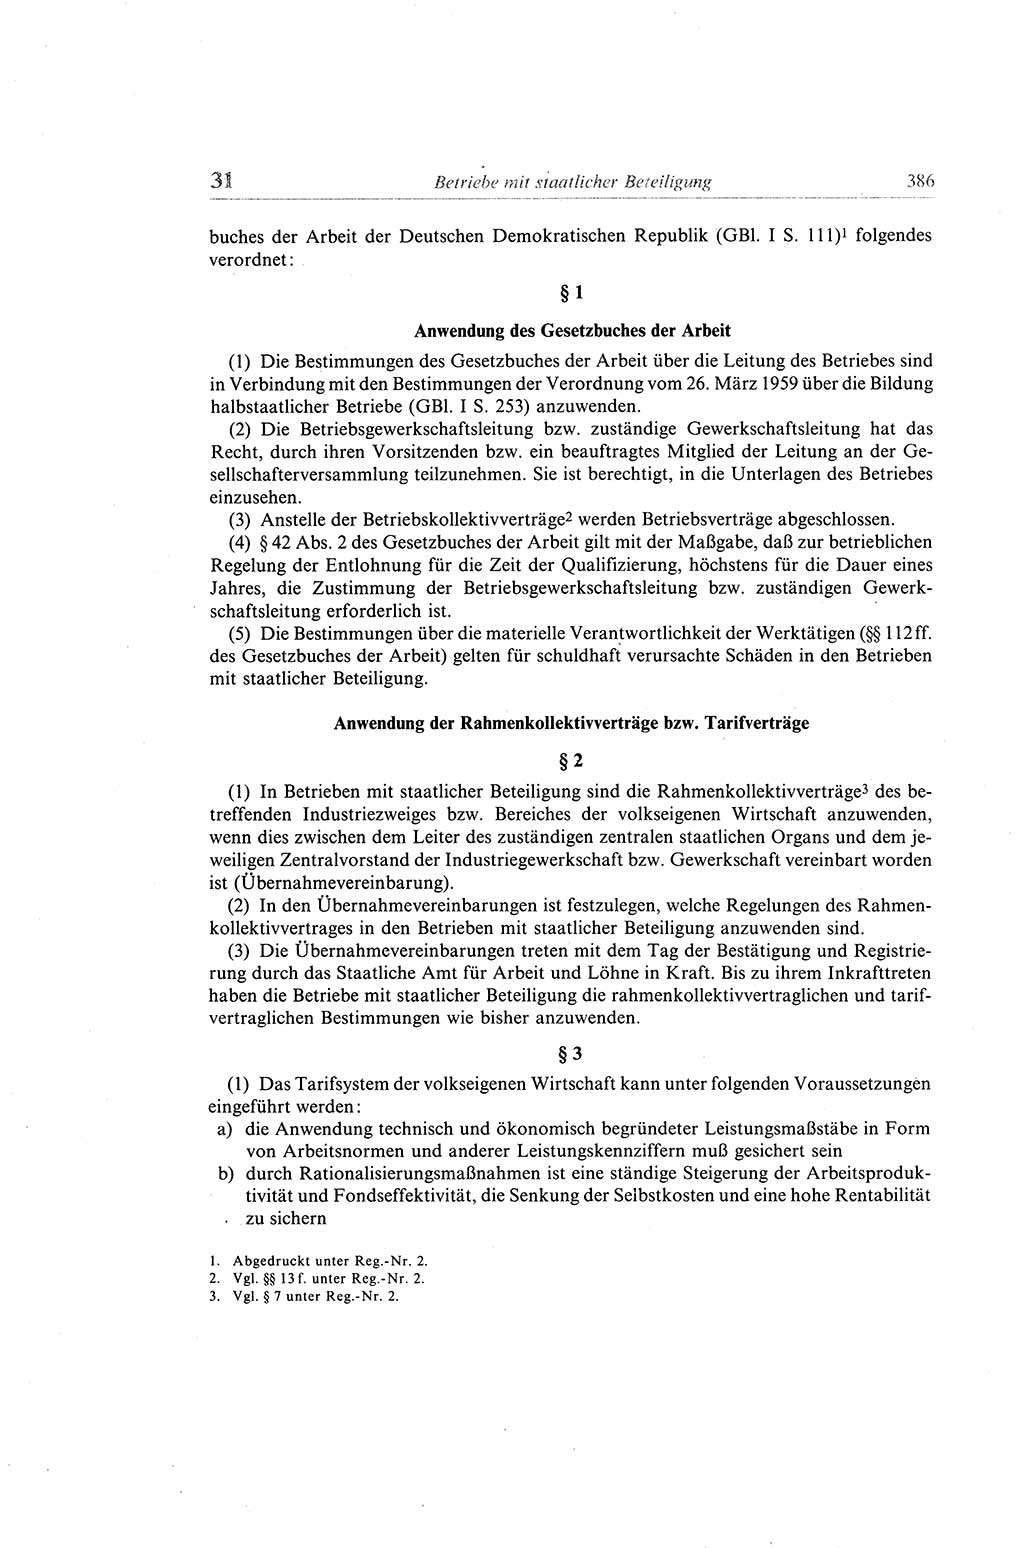 Gesetzbuch der Arbeit (GBA) und andere ausgewählte rechtliche Bestimmungen [Deutsche Demokratische Republik (DDR)] 1968, Seite 386 (GBA DDR 1968, S. 386)